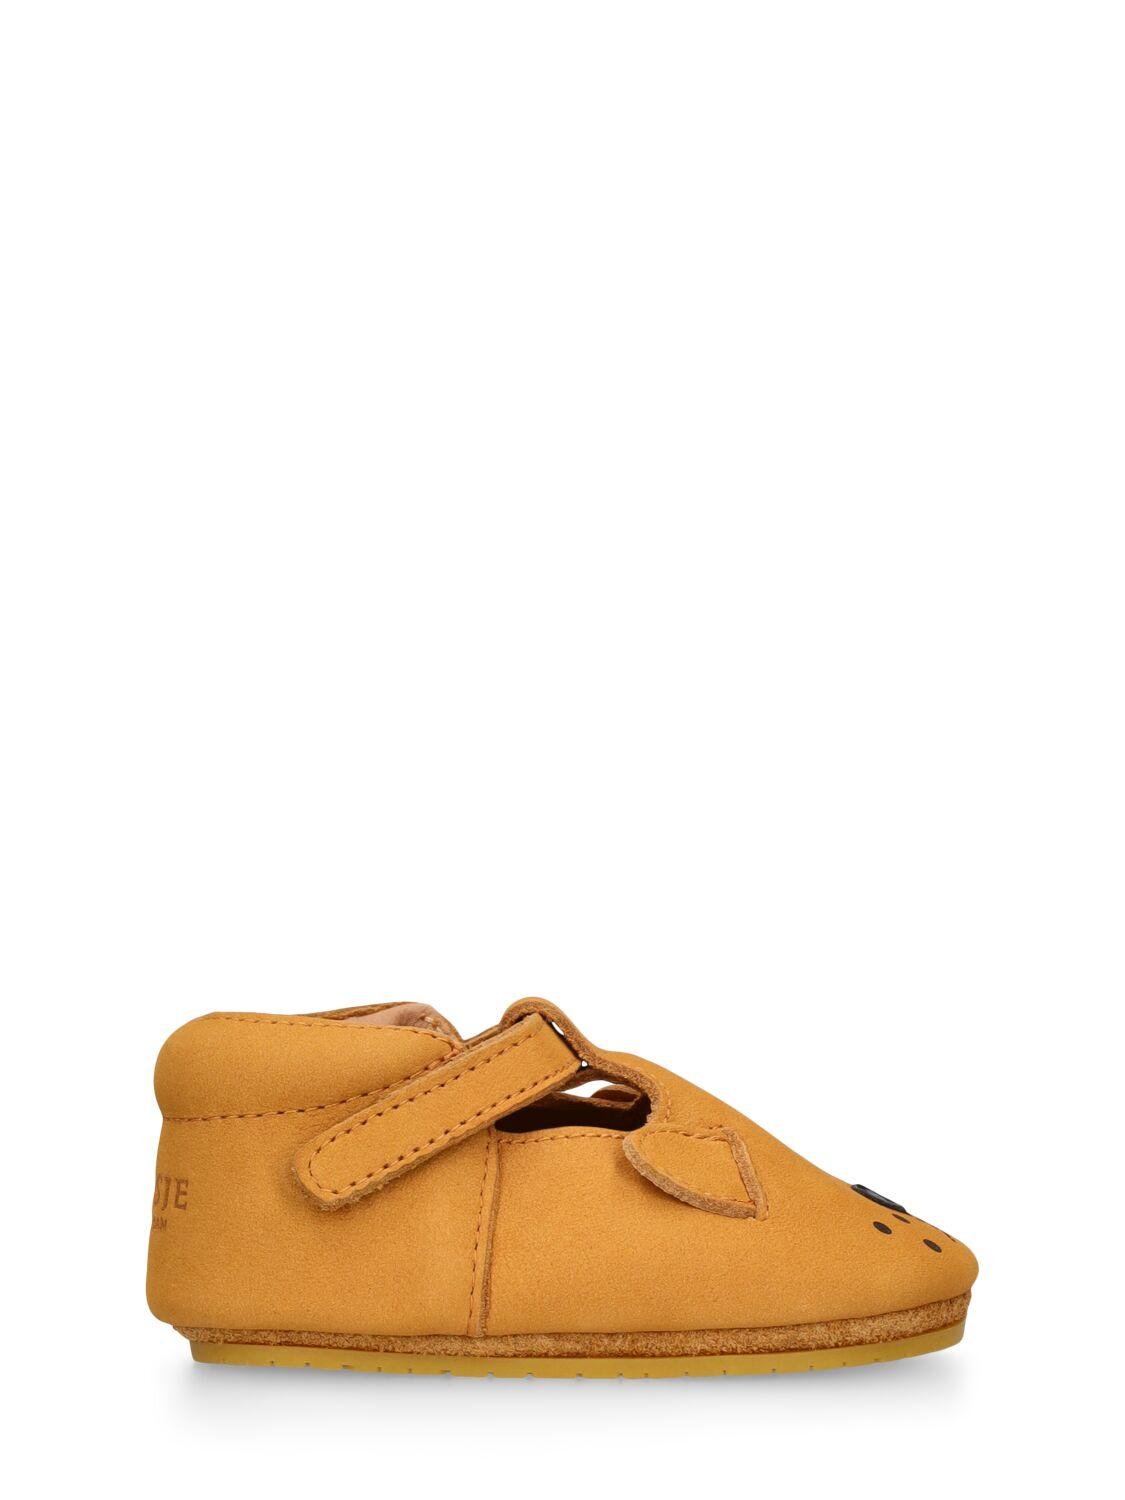 Lion Leather Pre-walker Shoes by DONSJE